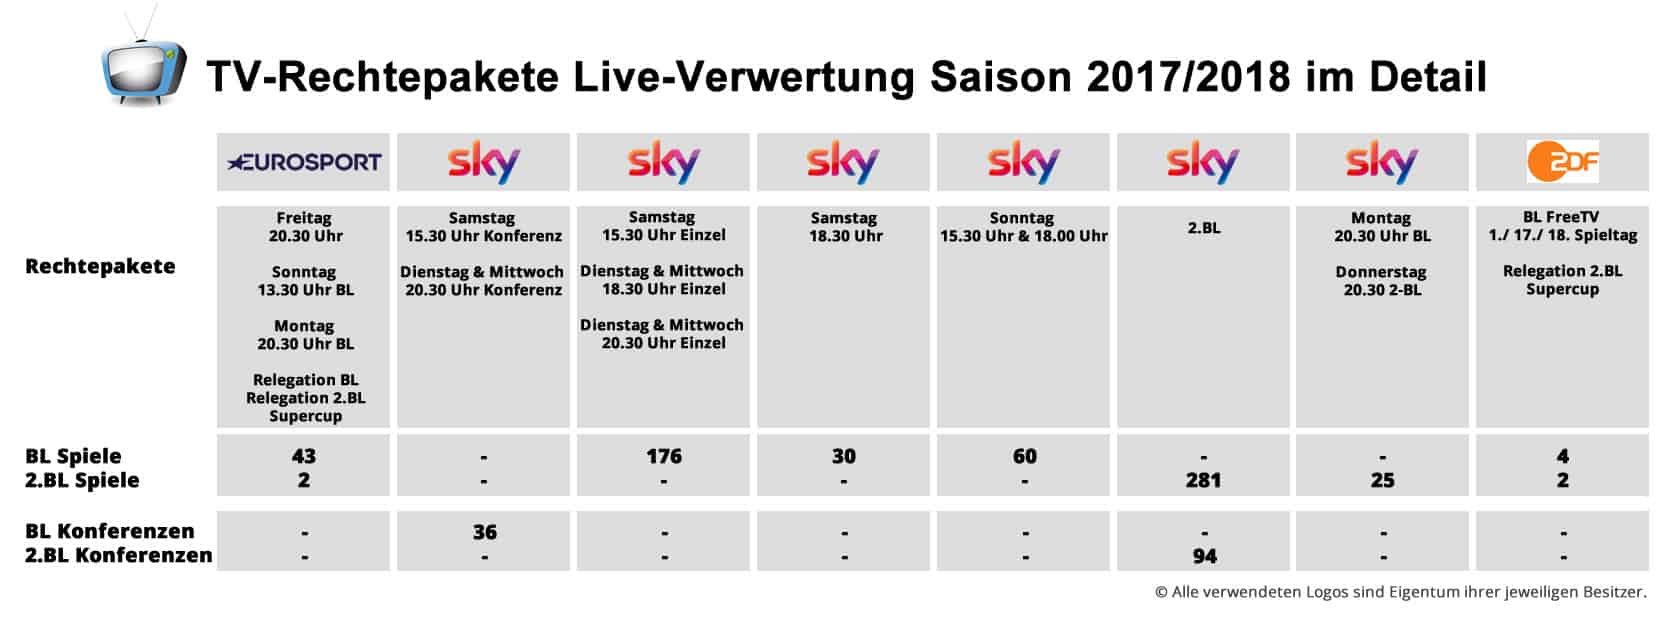 Bundesliga: TV-Rechtepakete Live-Verwertung Saison 2017/18 im Detail